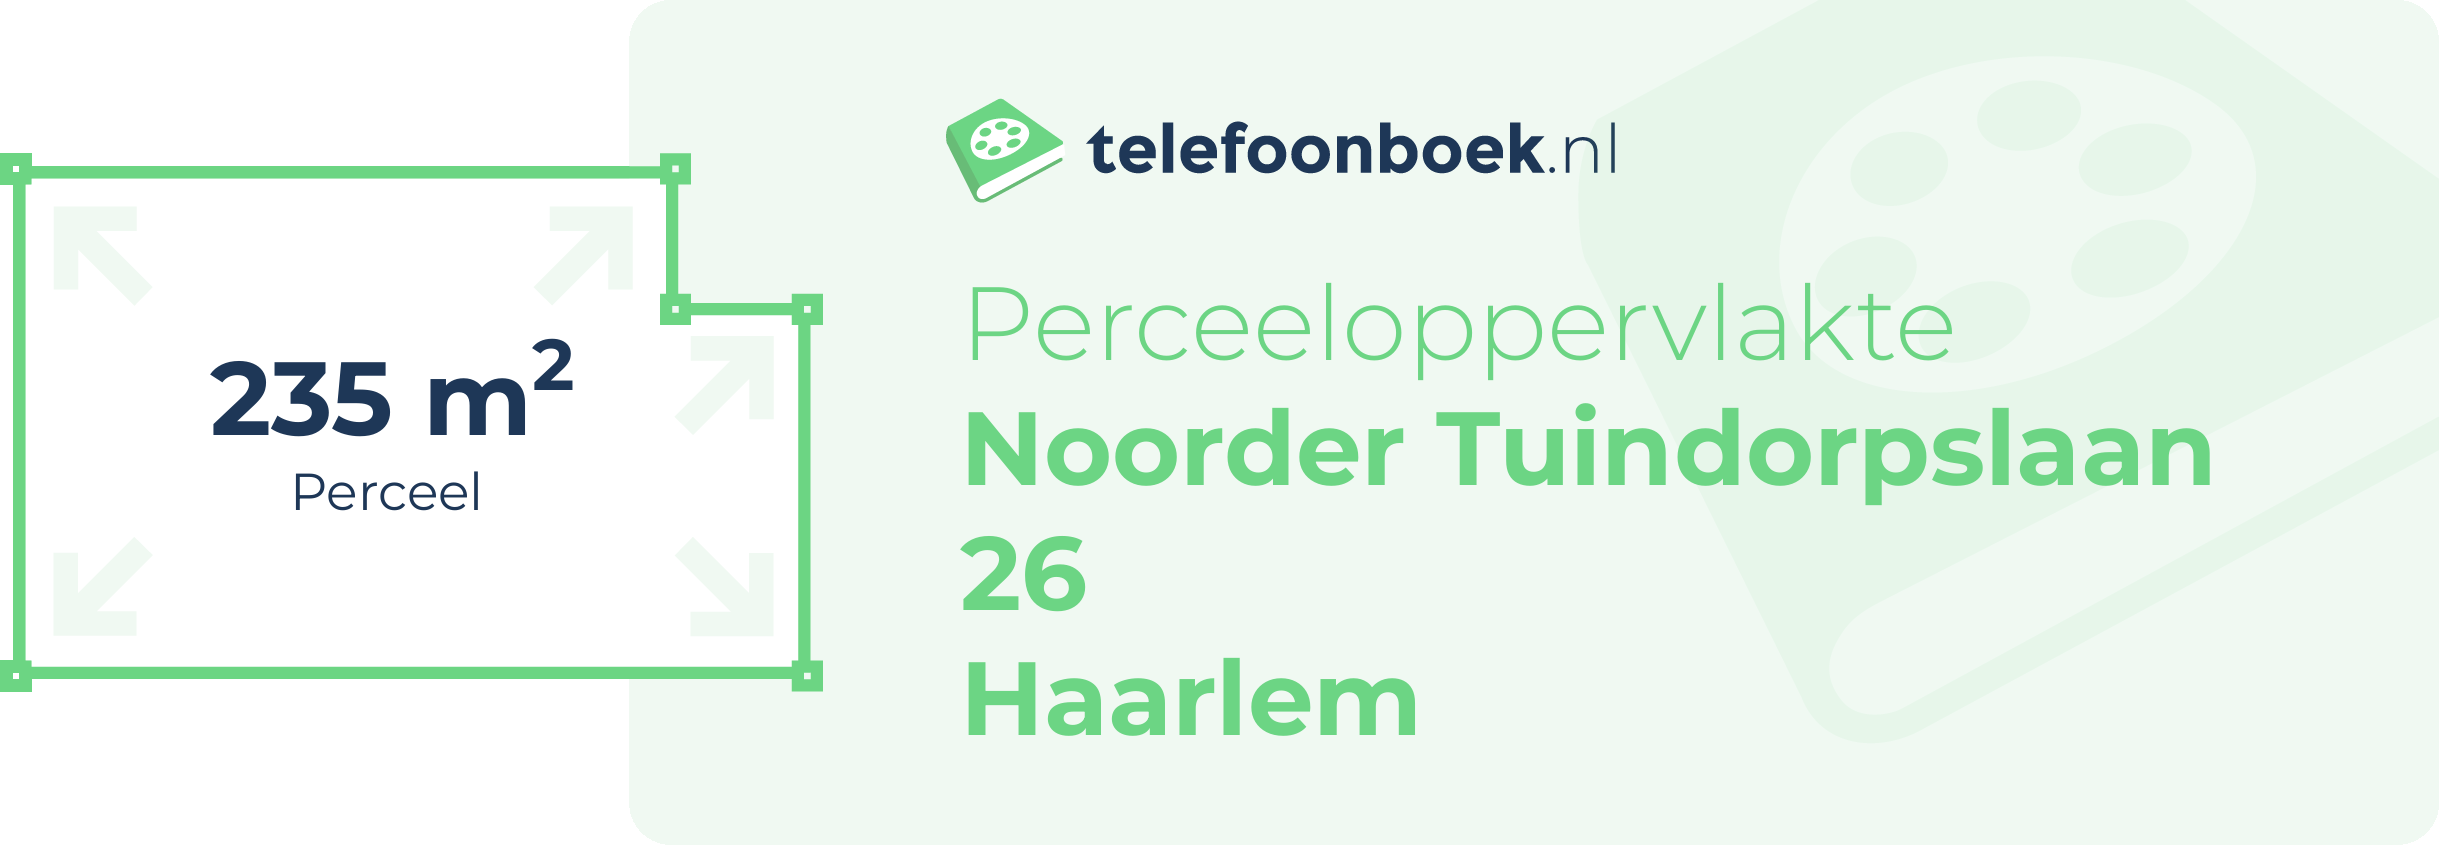 Perceeloppervlakte Noorder Tuindorpslaan 26 Haarlem